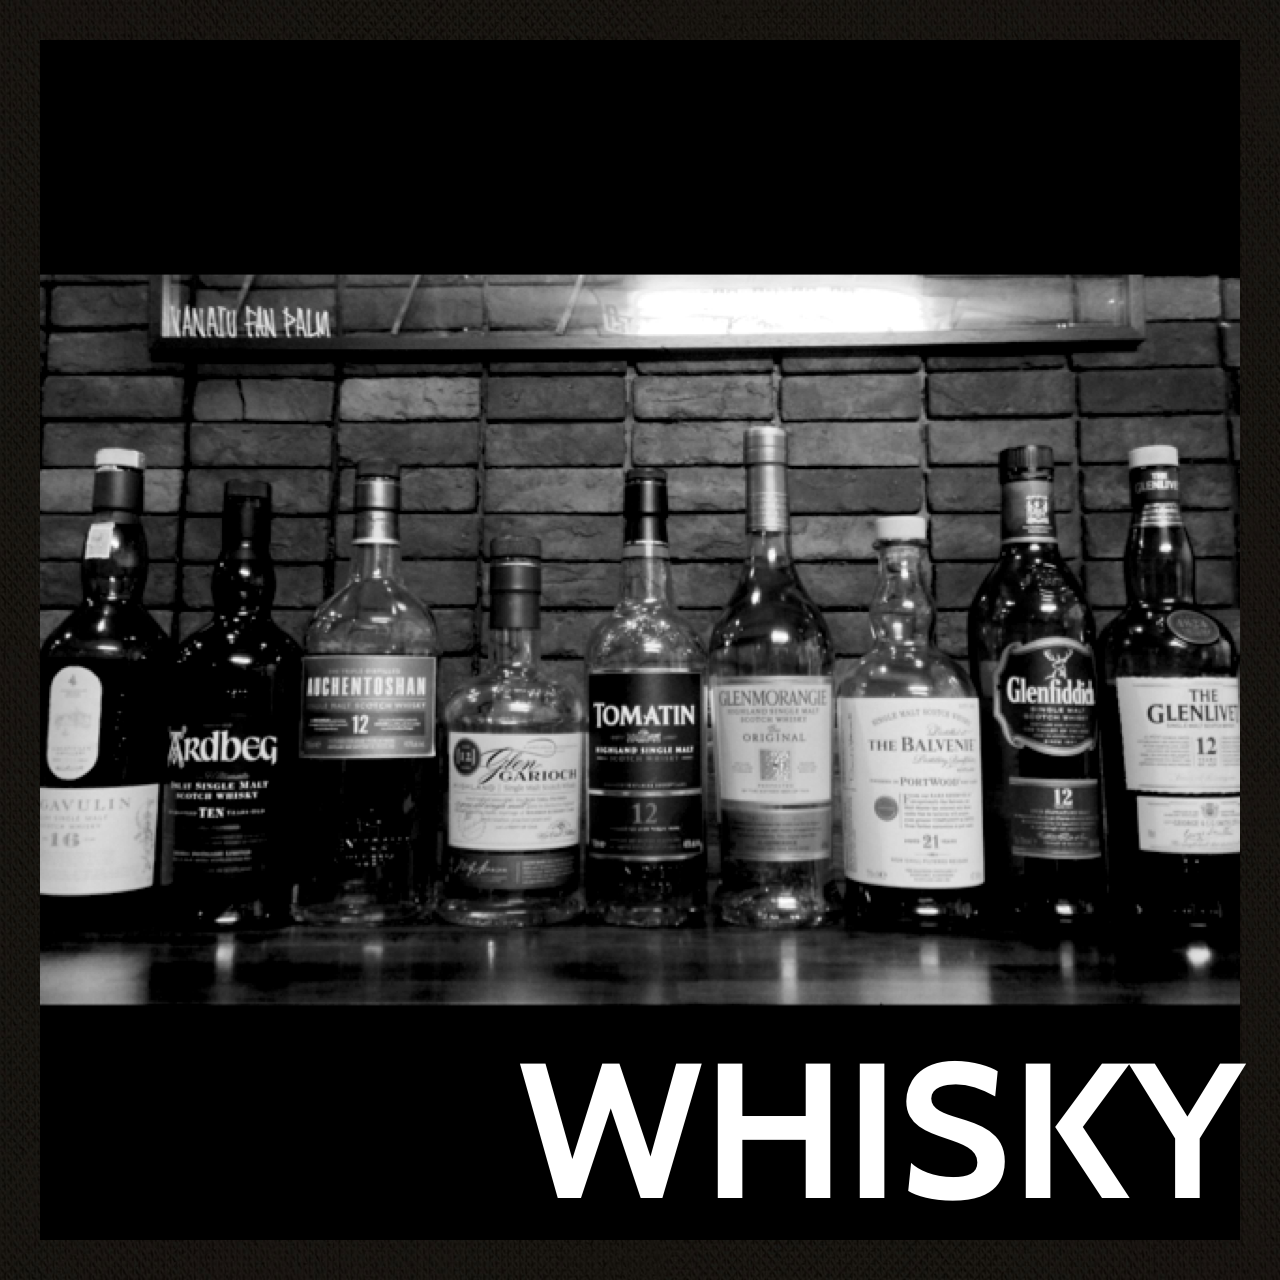 シングルモルトを中心にスモークとの相性抜群の厳選whiskyです。